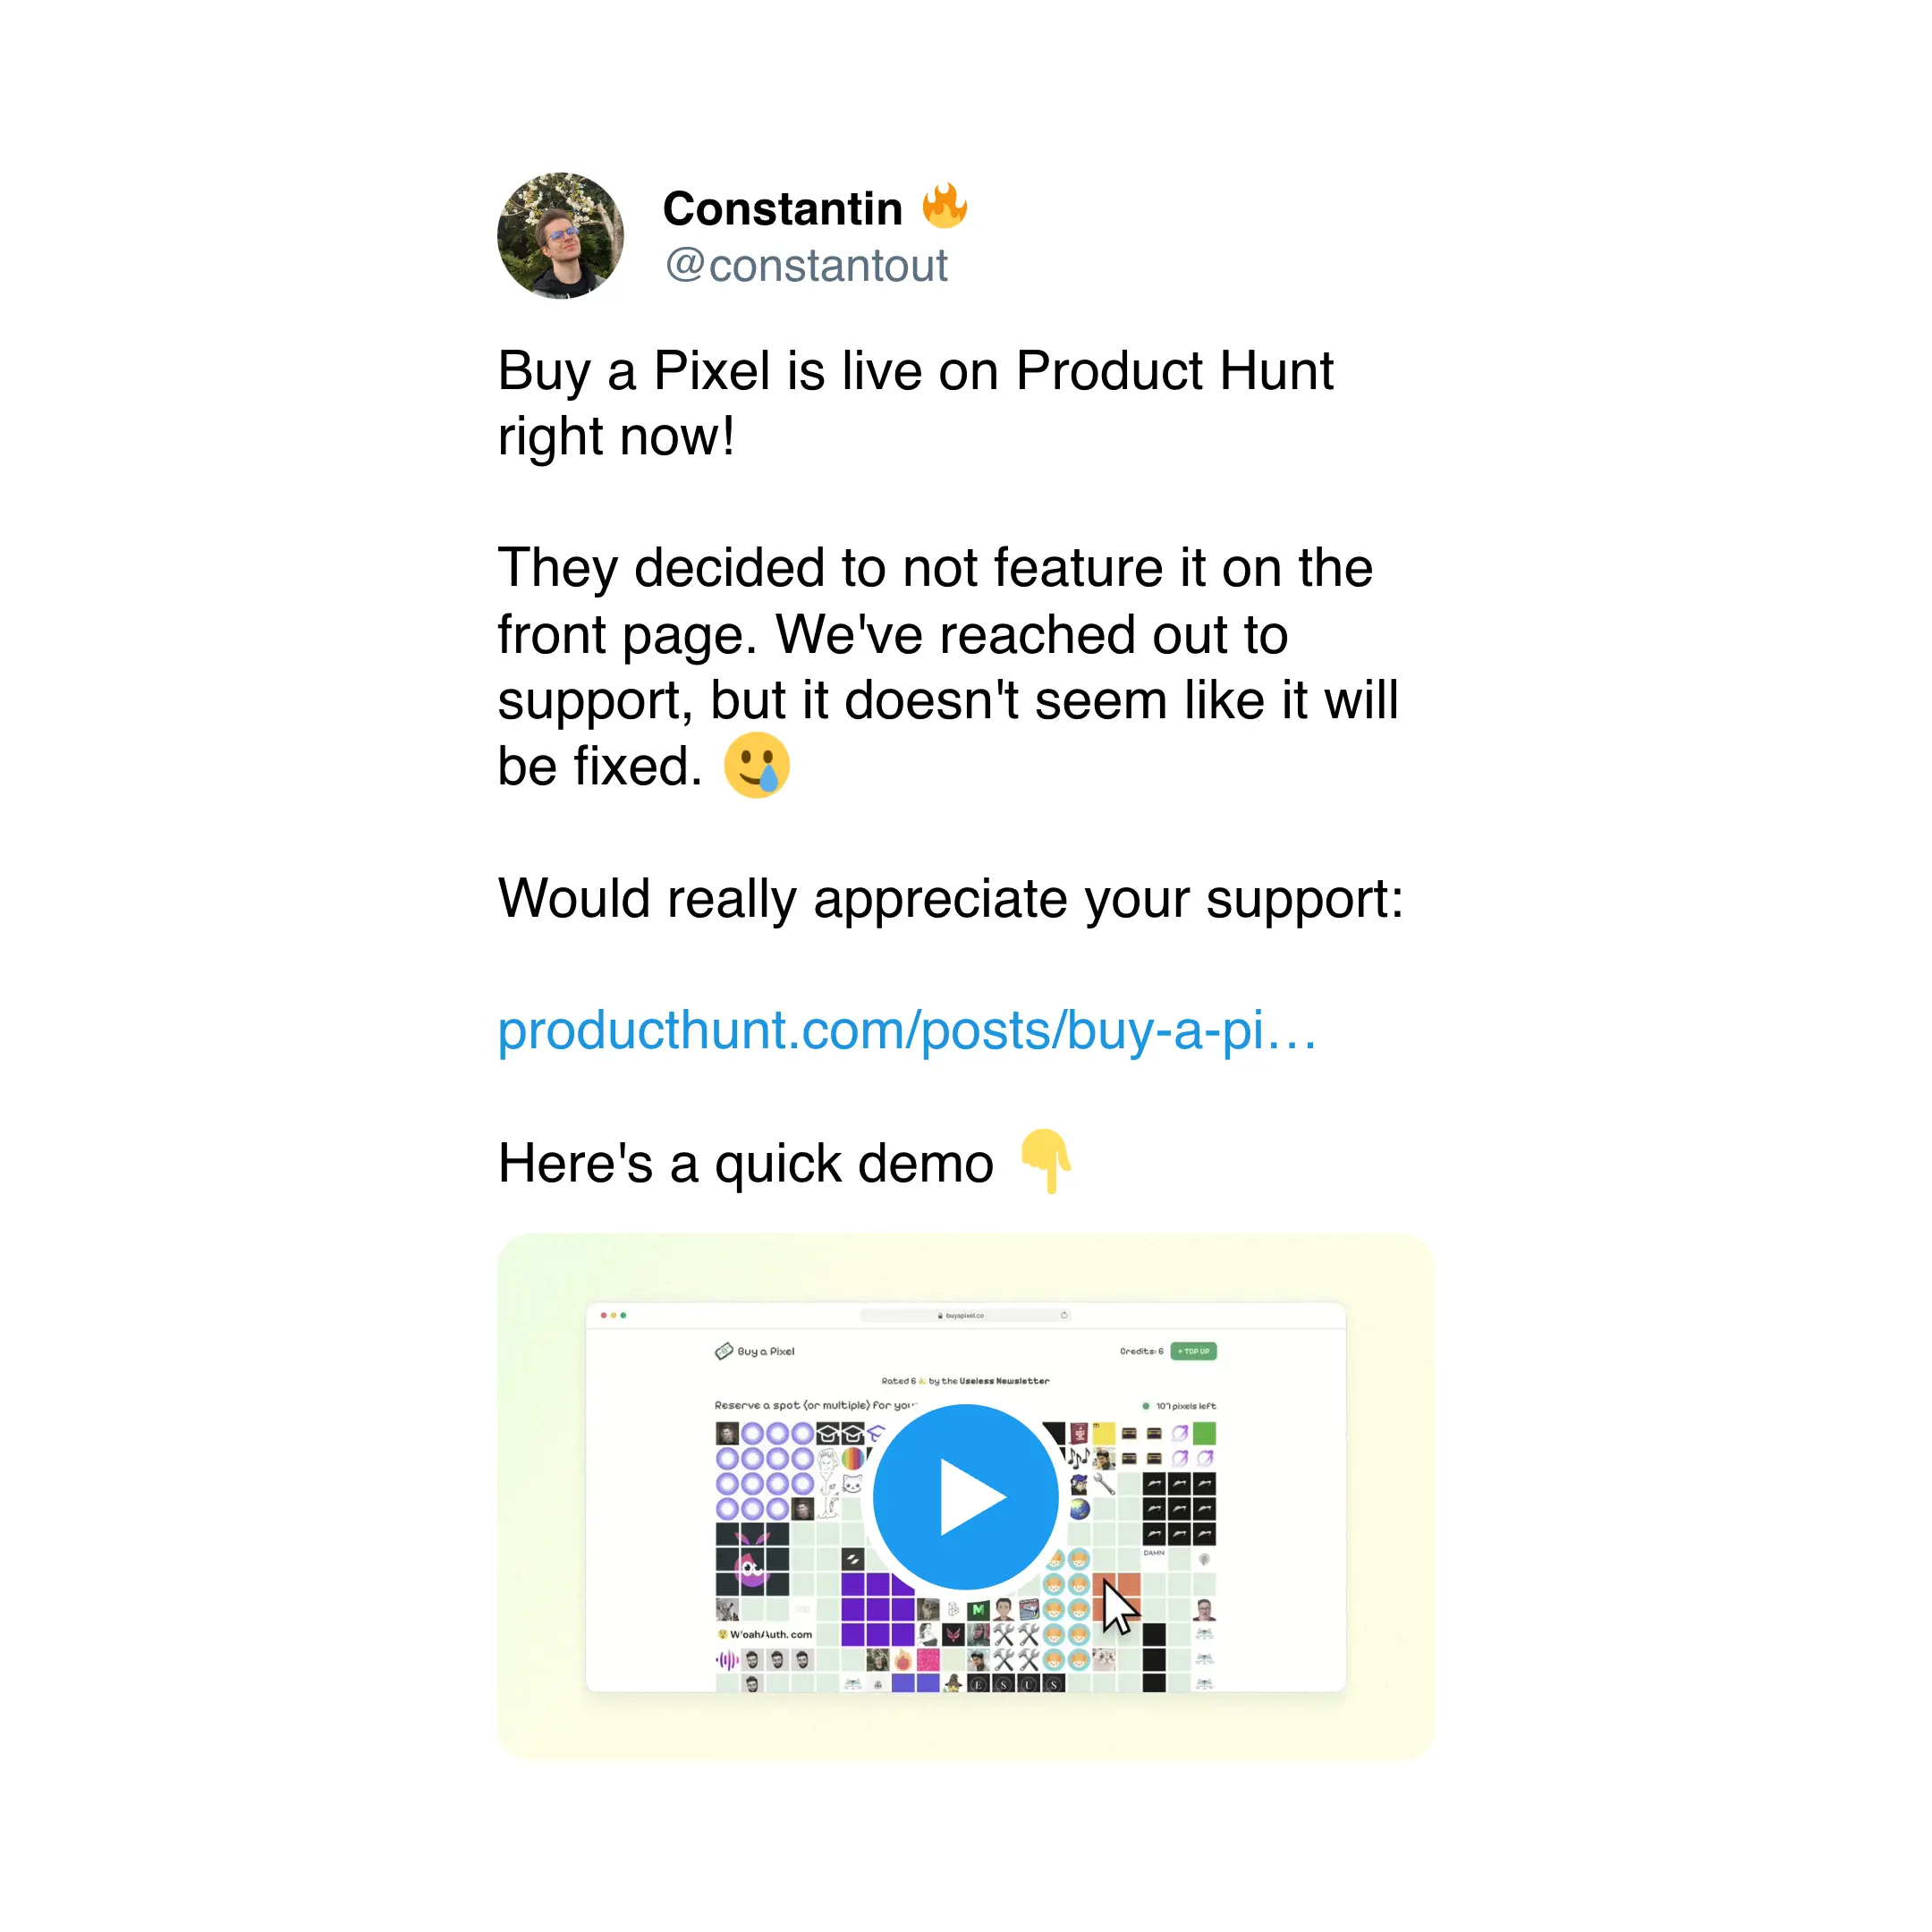 Buy a Pixel launch tweet